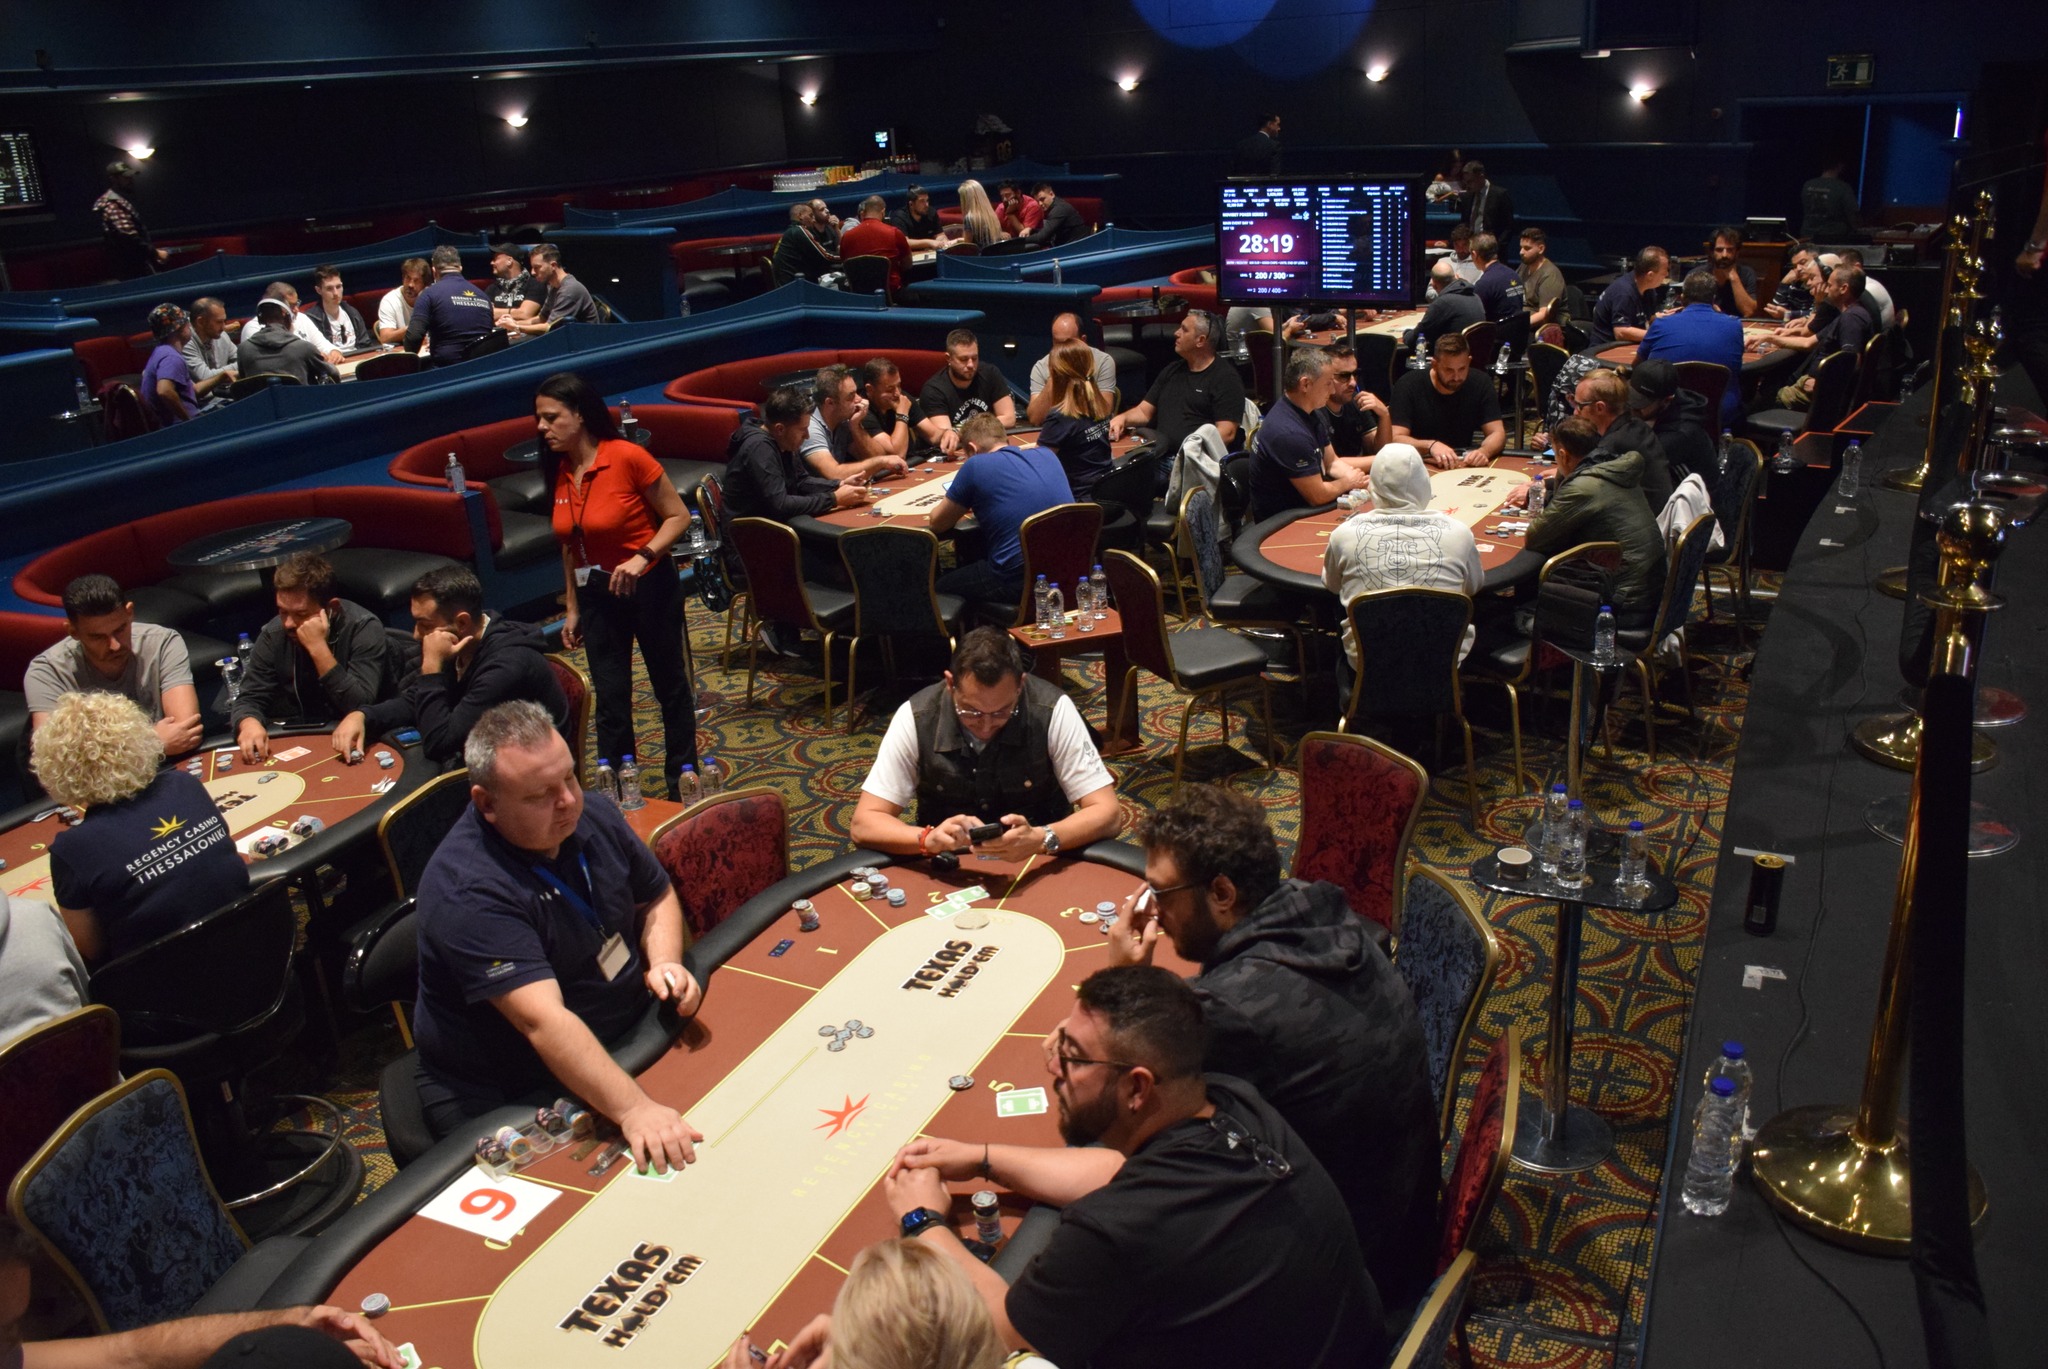 Novibet Poker Series 3 στο Regency Casino της Θεσσαλονίκης